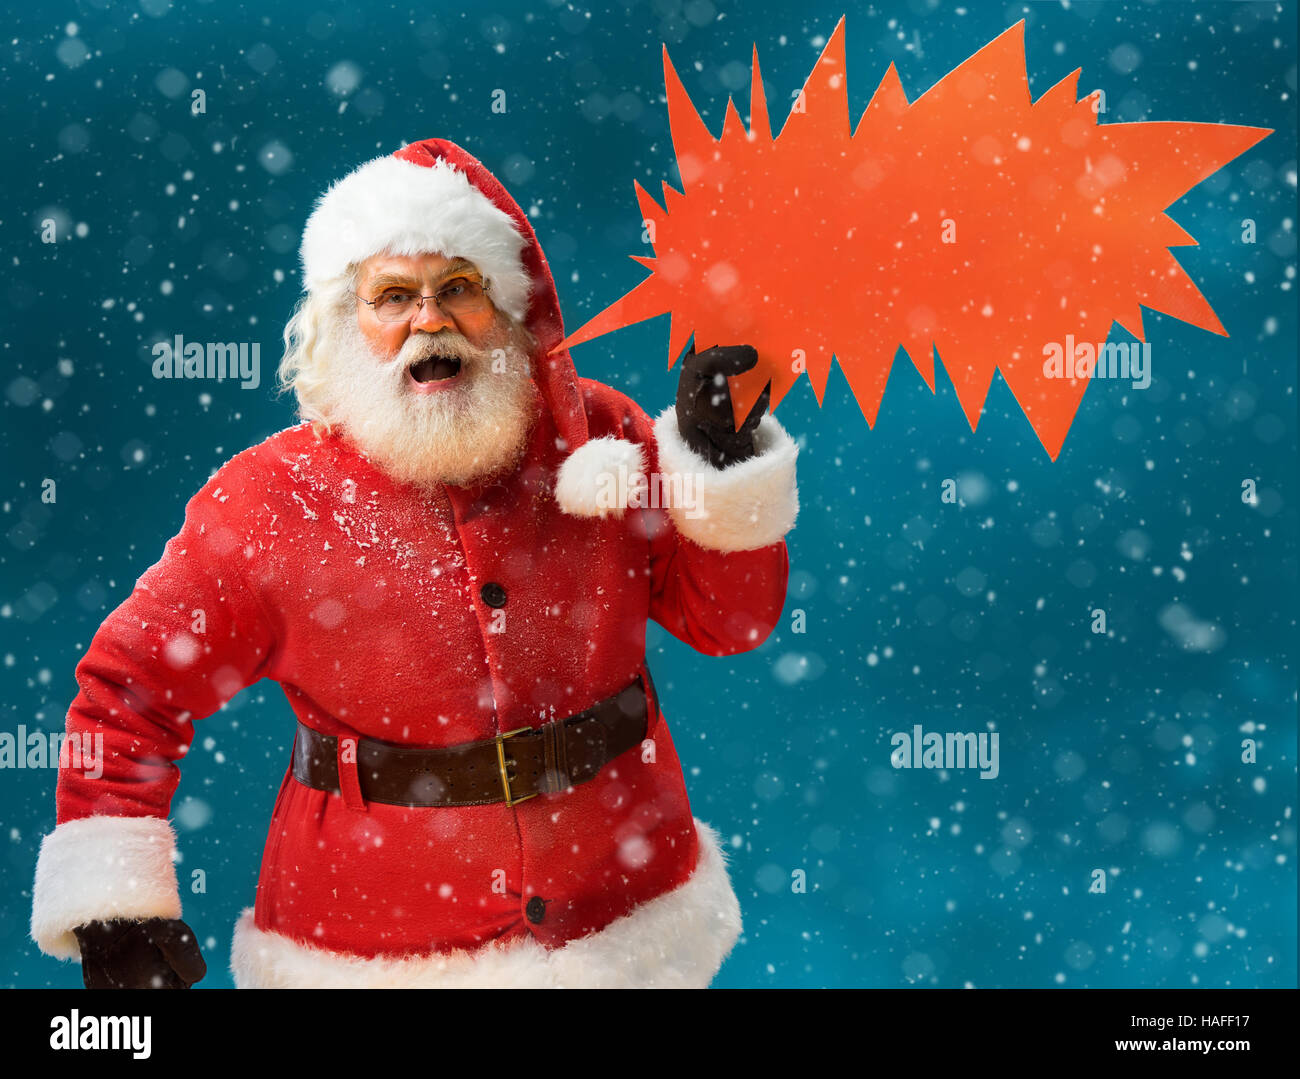 angry santa claus